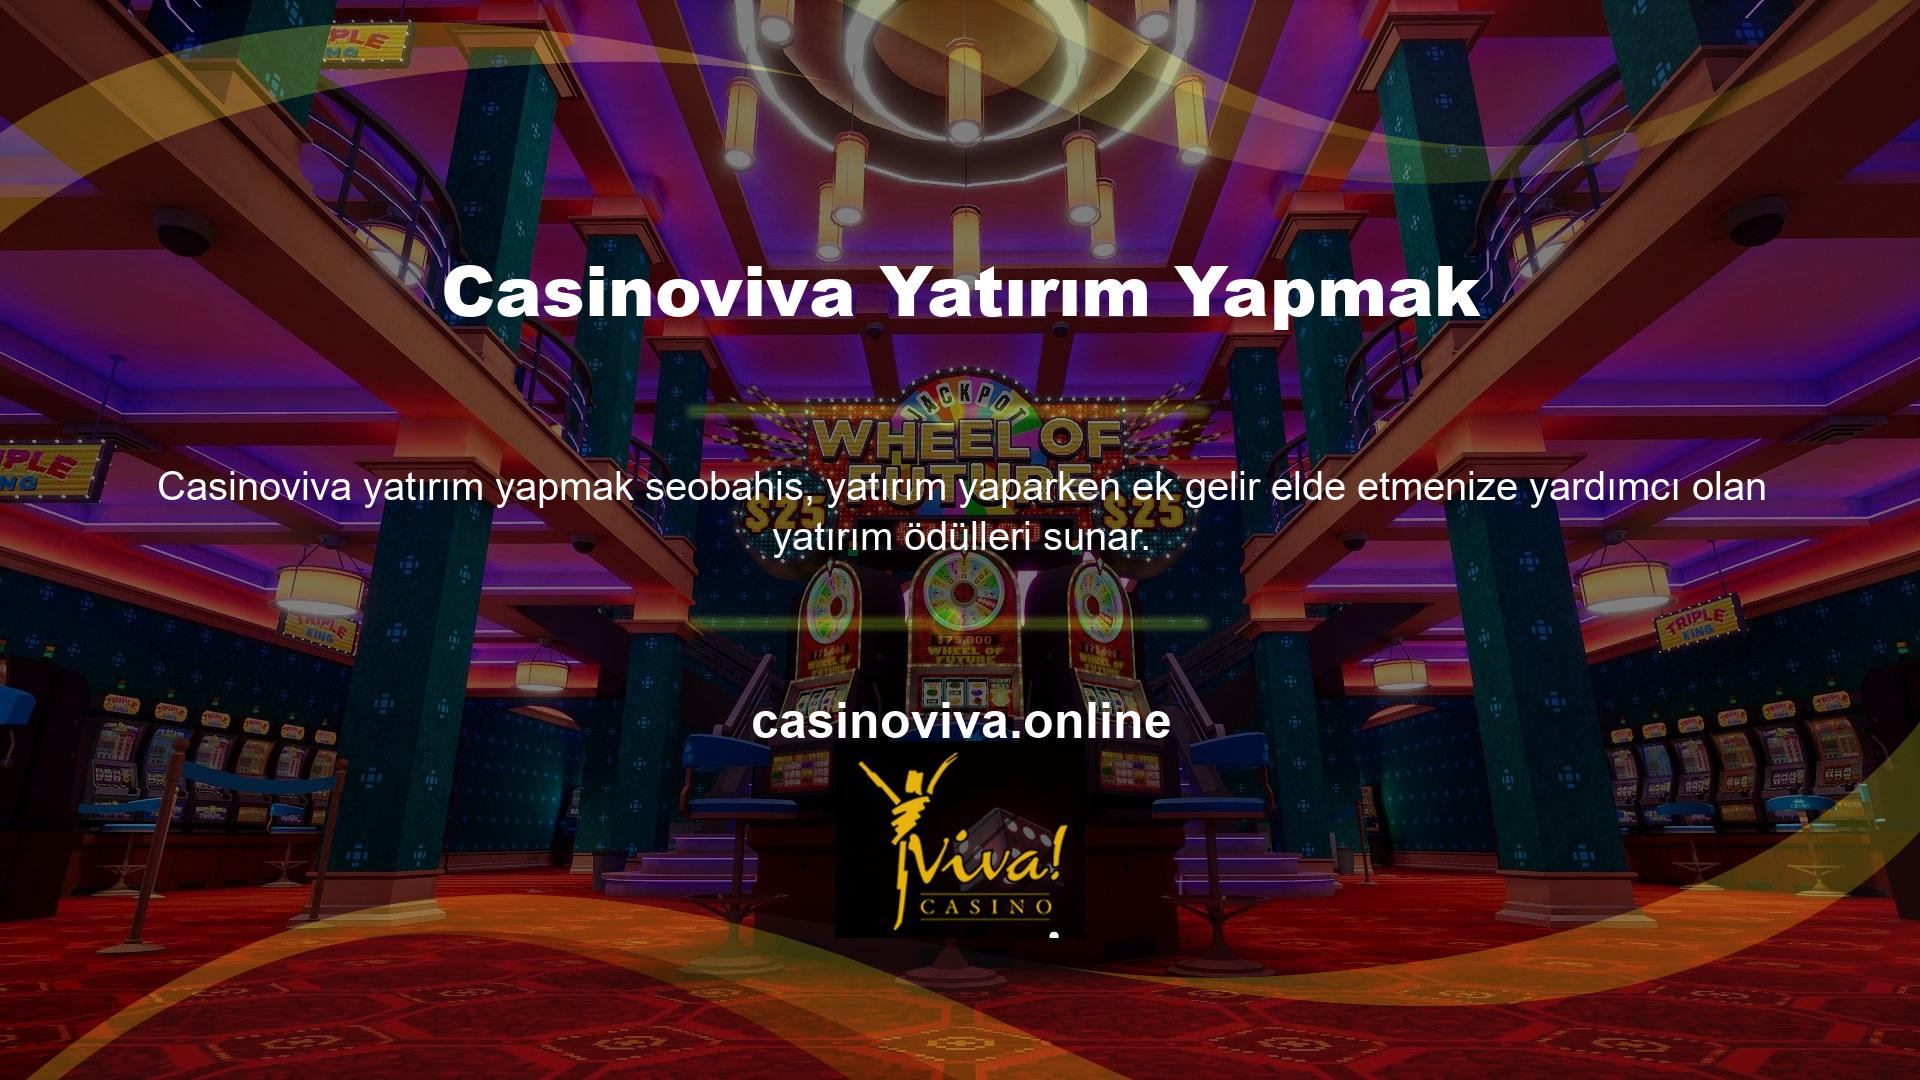 Casinoviva web sitesinde VIP kulübün yanı sıra bonuslar da sunulmaktadır